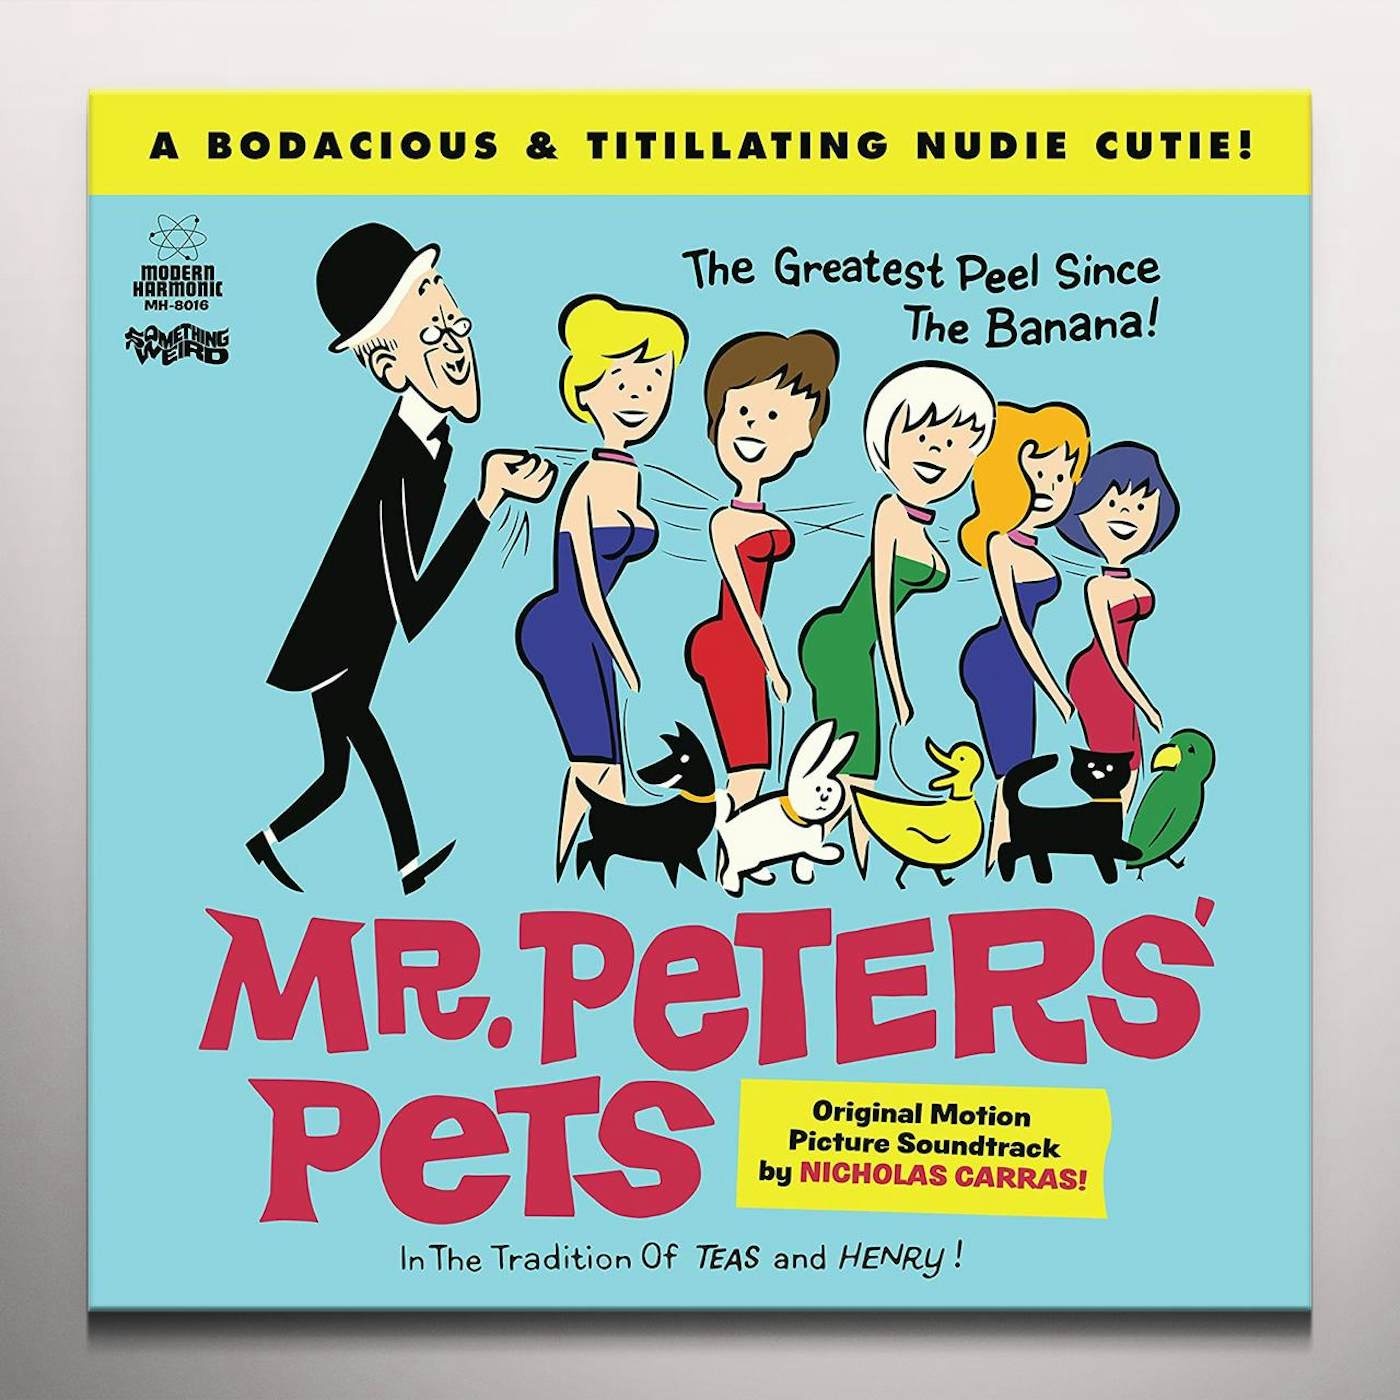 Nicholas Carras MR. PETERS' PETS (ORIGINAL MOTION PICTURE) Vinyl Record